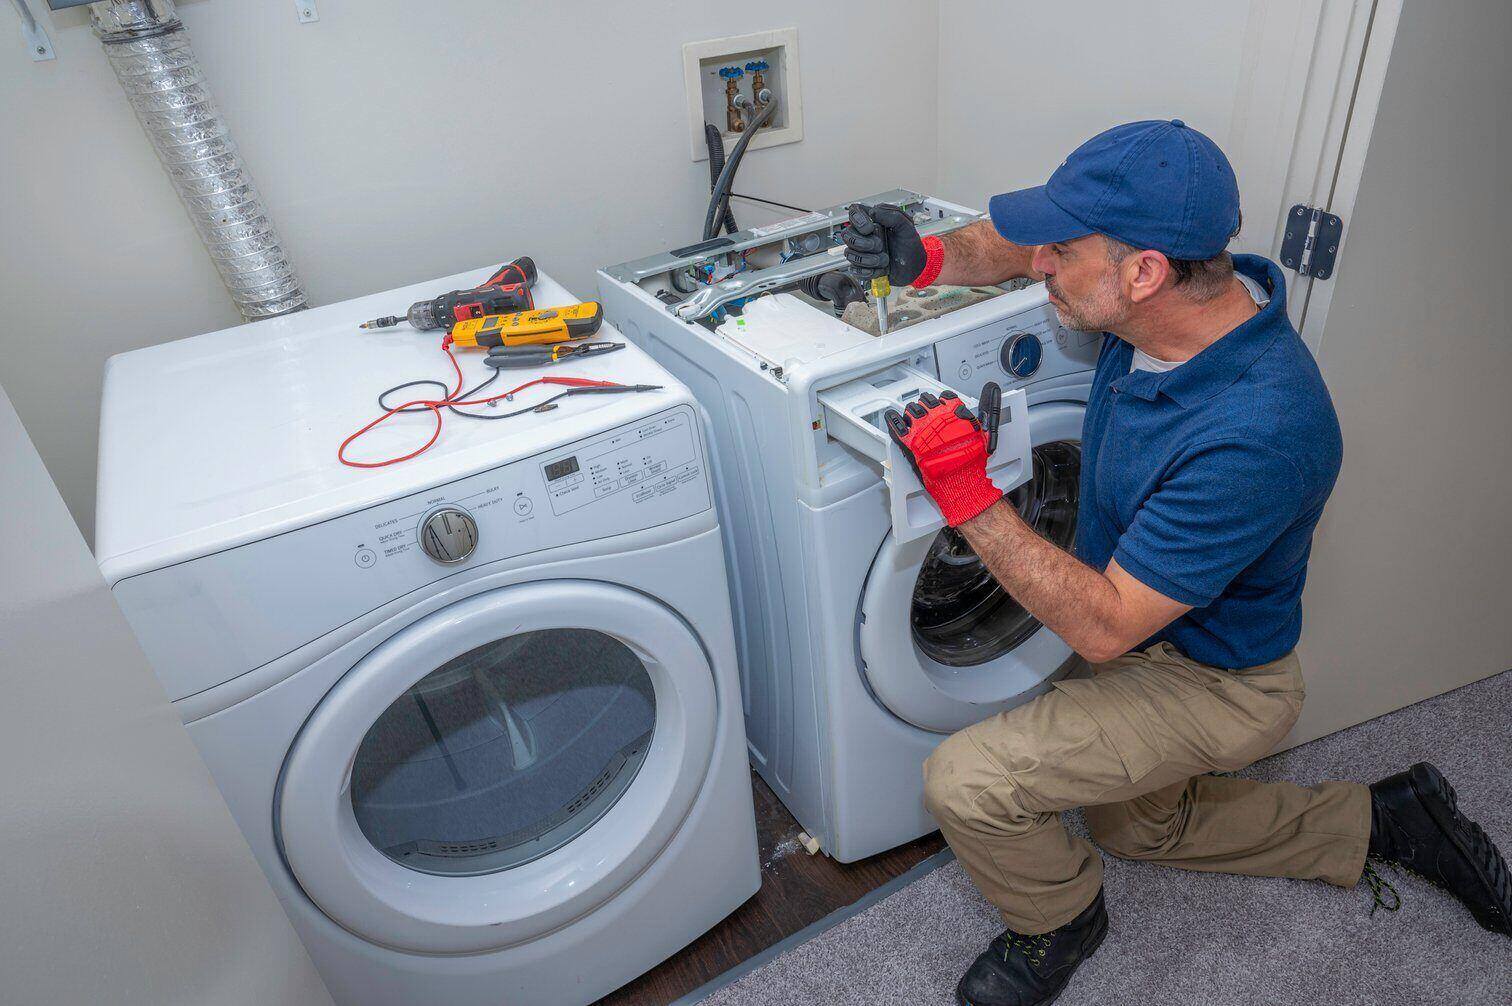 A service technician repairing a broken washing machine